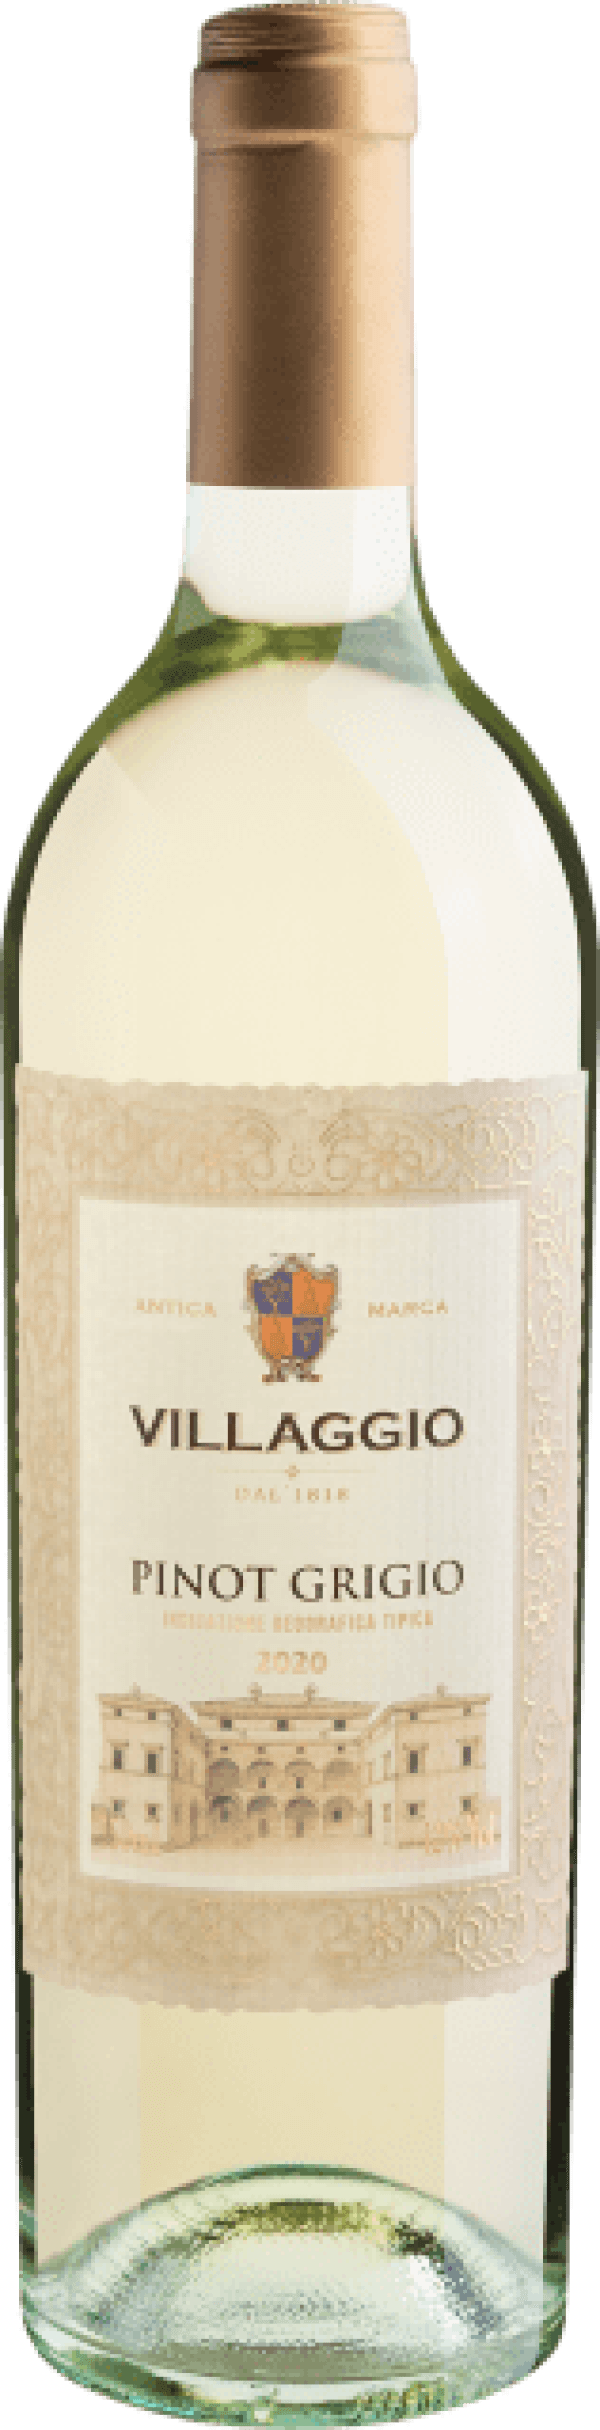 Antica Marca Villagio Dal 1818 Pinot Grigio Terre Siciliane IGT 2020